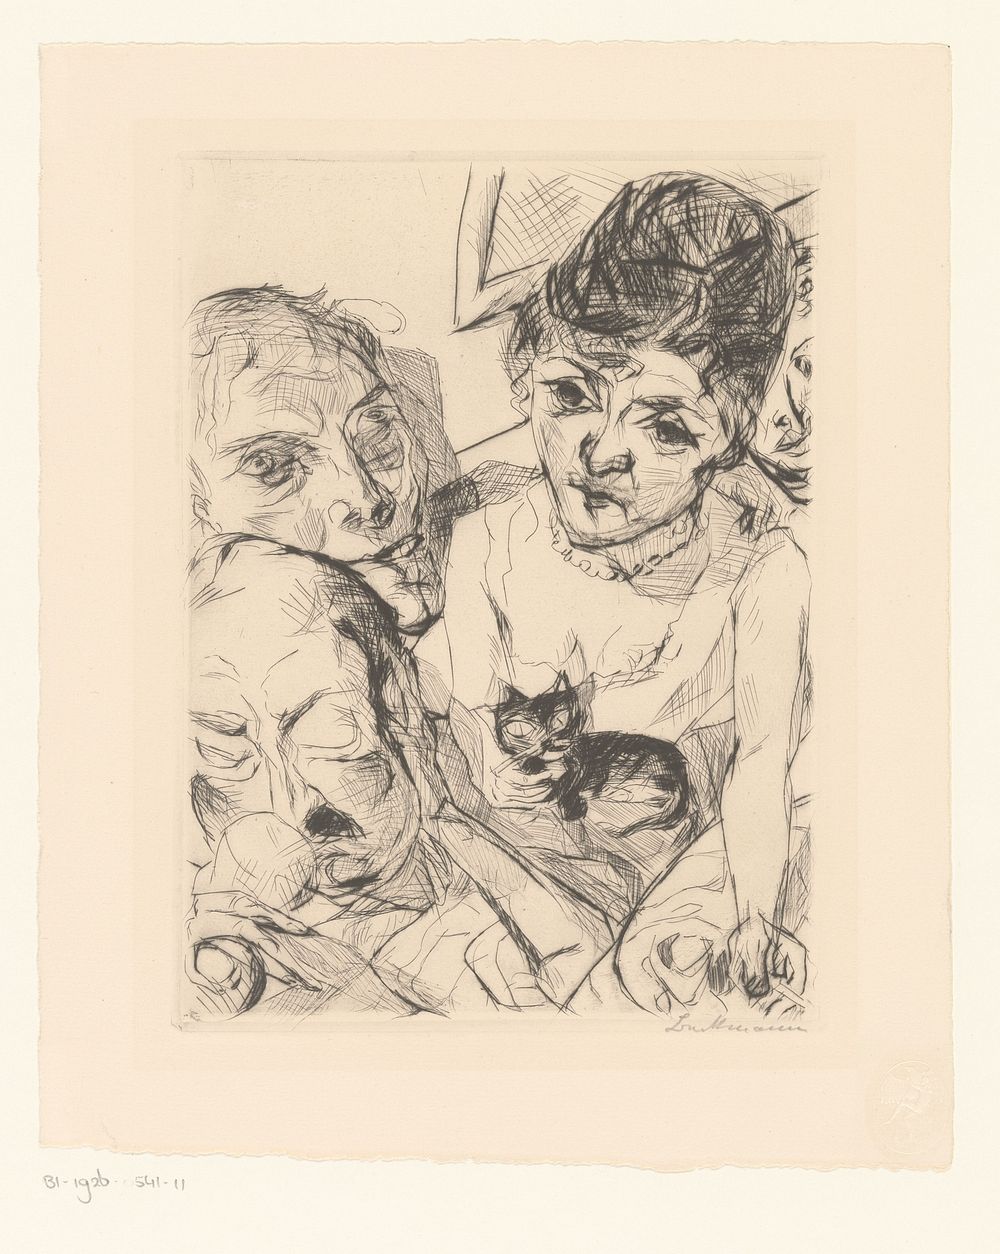 Avond (zelfportret met de Battenbergs) (1916 - 1919) by Max Beckmann, Franz Hanfstaengl and R Piper